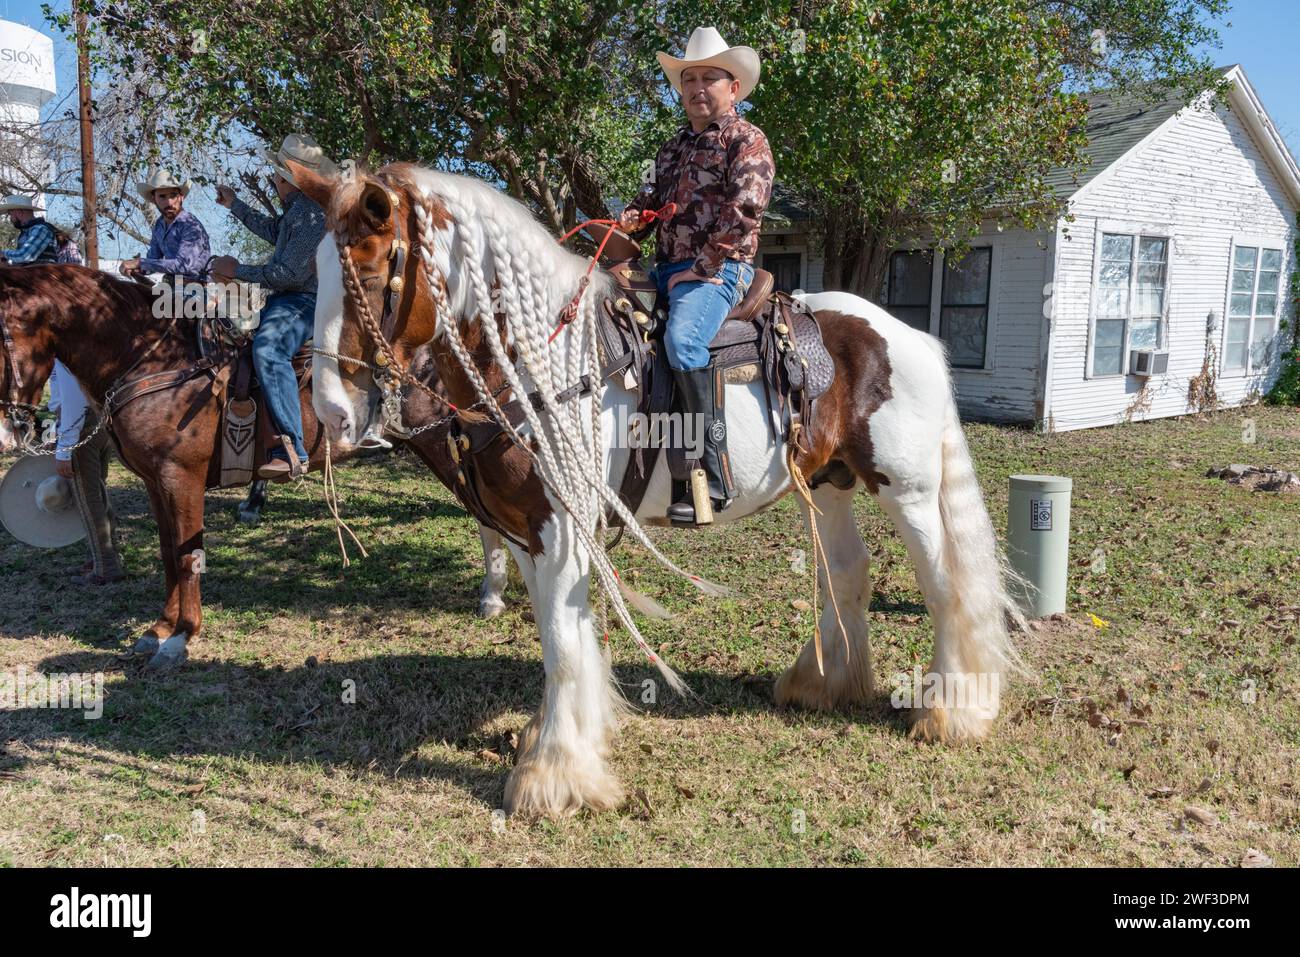 Cowboy sitzt im Sattel auf einem Pferd mit geflochtener Mähne und wartet auf den Beginn der 92. Jährlichen Texas Citrus Fiesta Parade of Oranges, Mission, Texas, USA. Stockfoto